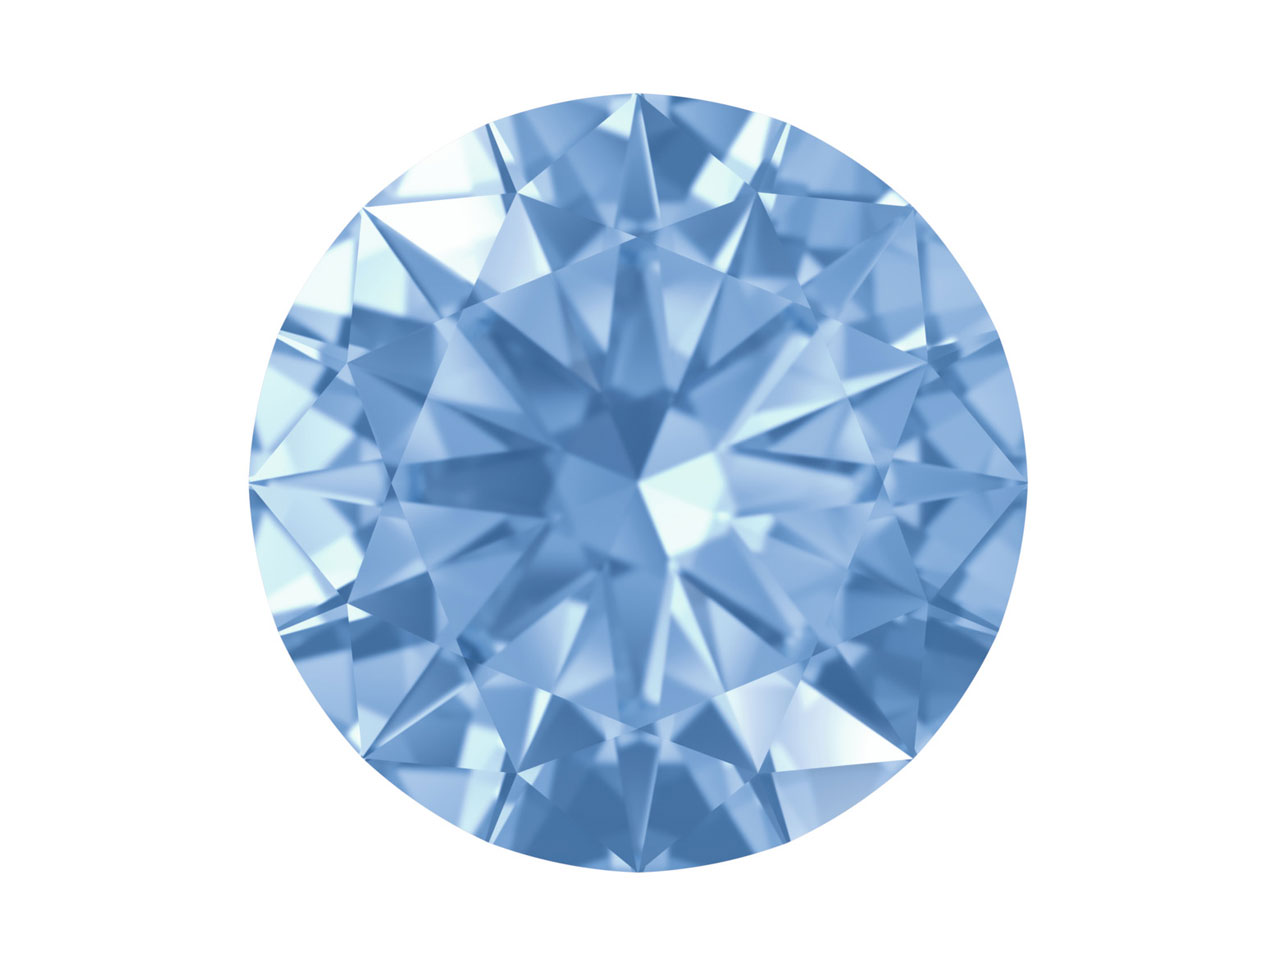 Swarovski Gemstones Blue Sapphire Round Brilliant Cut 1mm Very Light